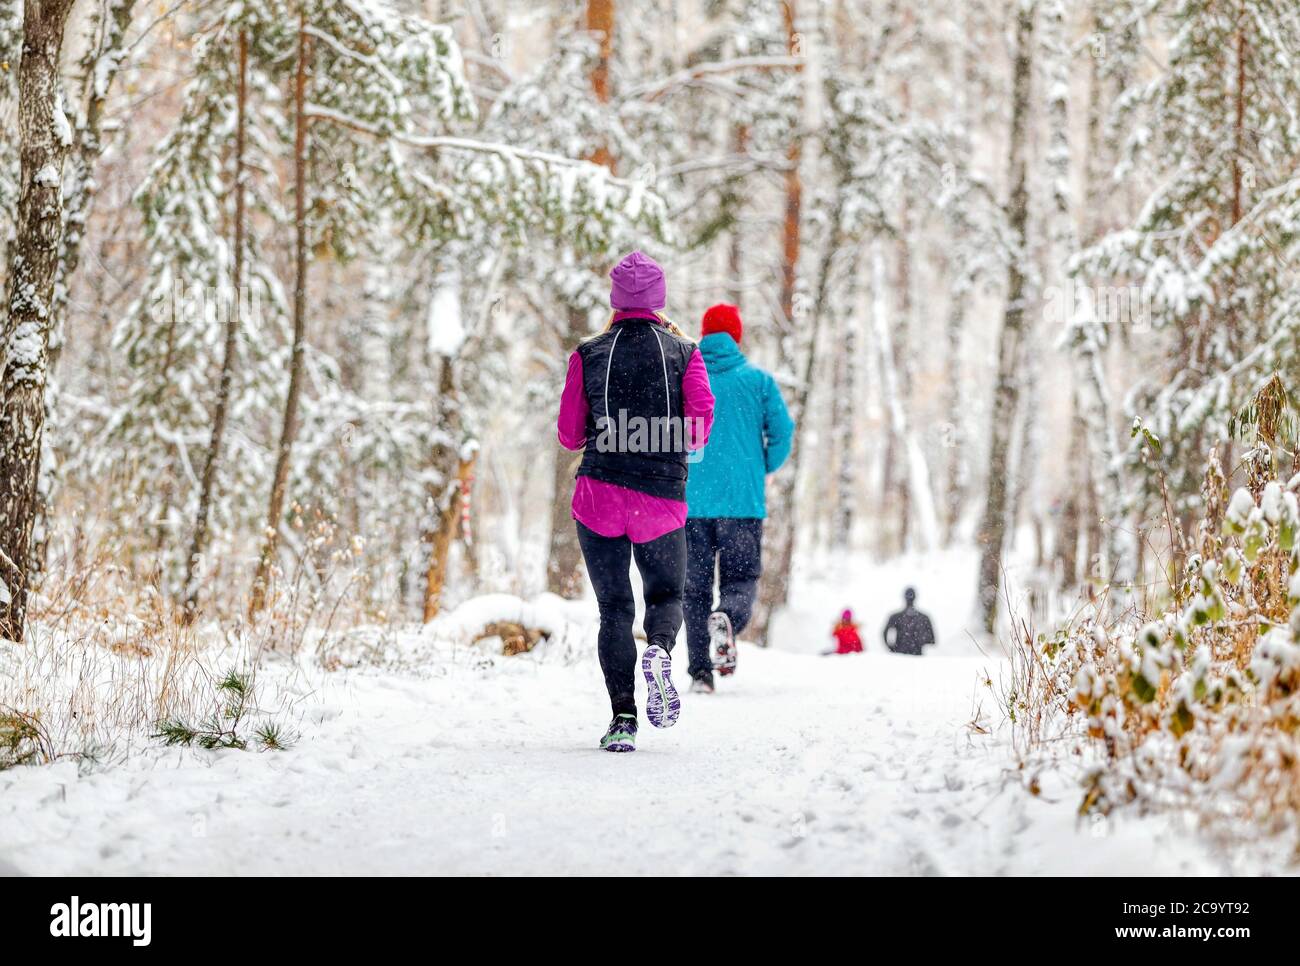 athlètes coureurs course d'hiver marathon en forêt pendant une chute de neige Banque D'Images